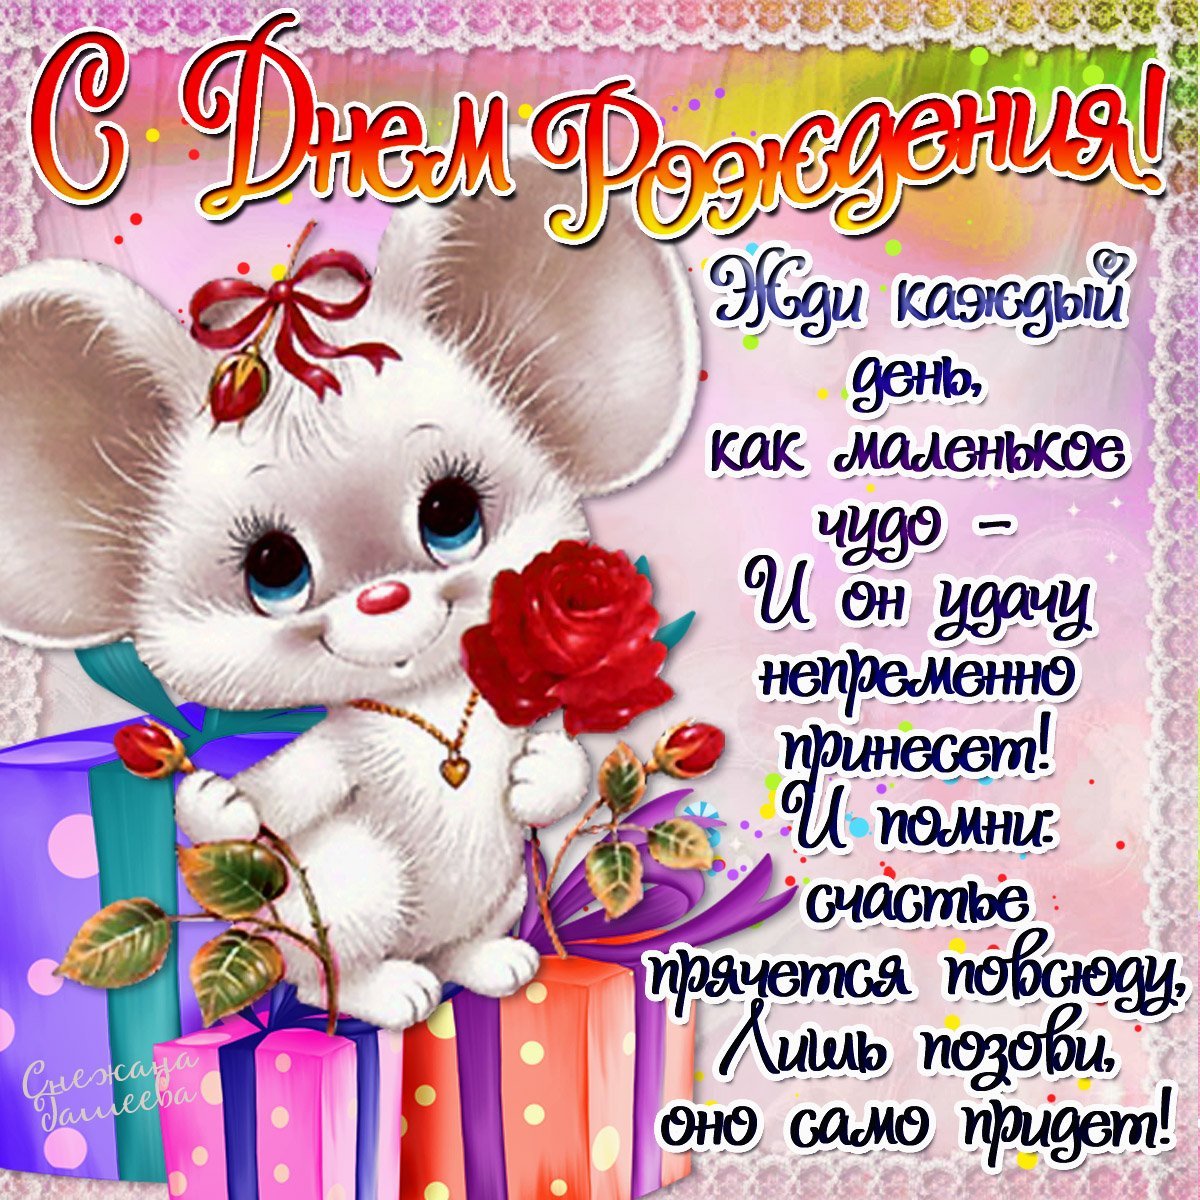 Поздравления с днем рождения племяннице 20 лет своими словами - dentalcare-rnd.ru